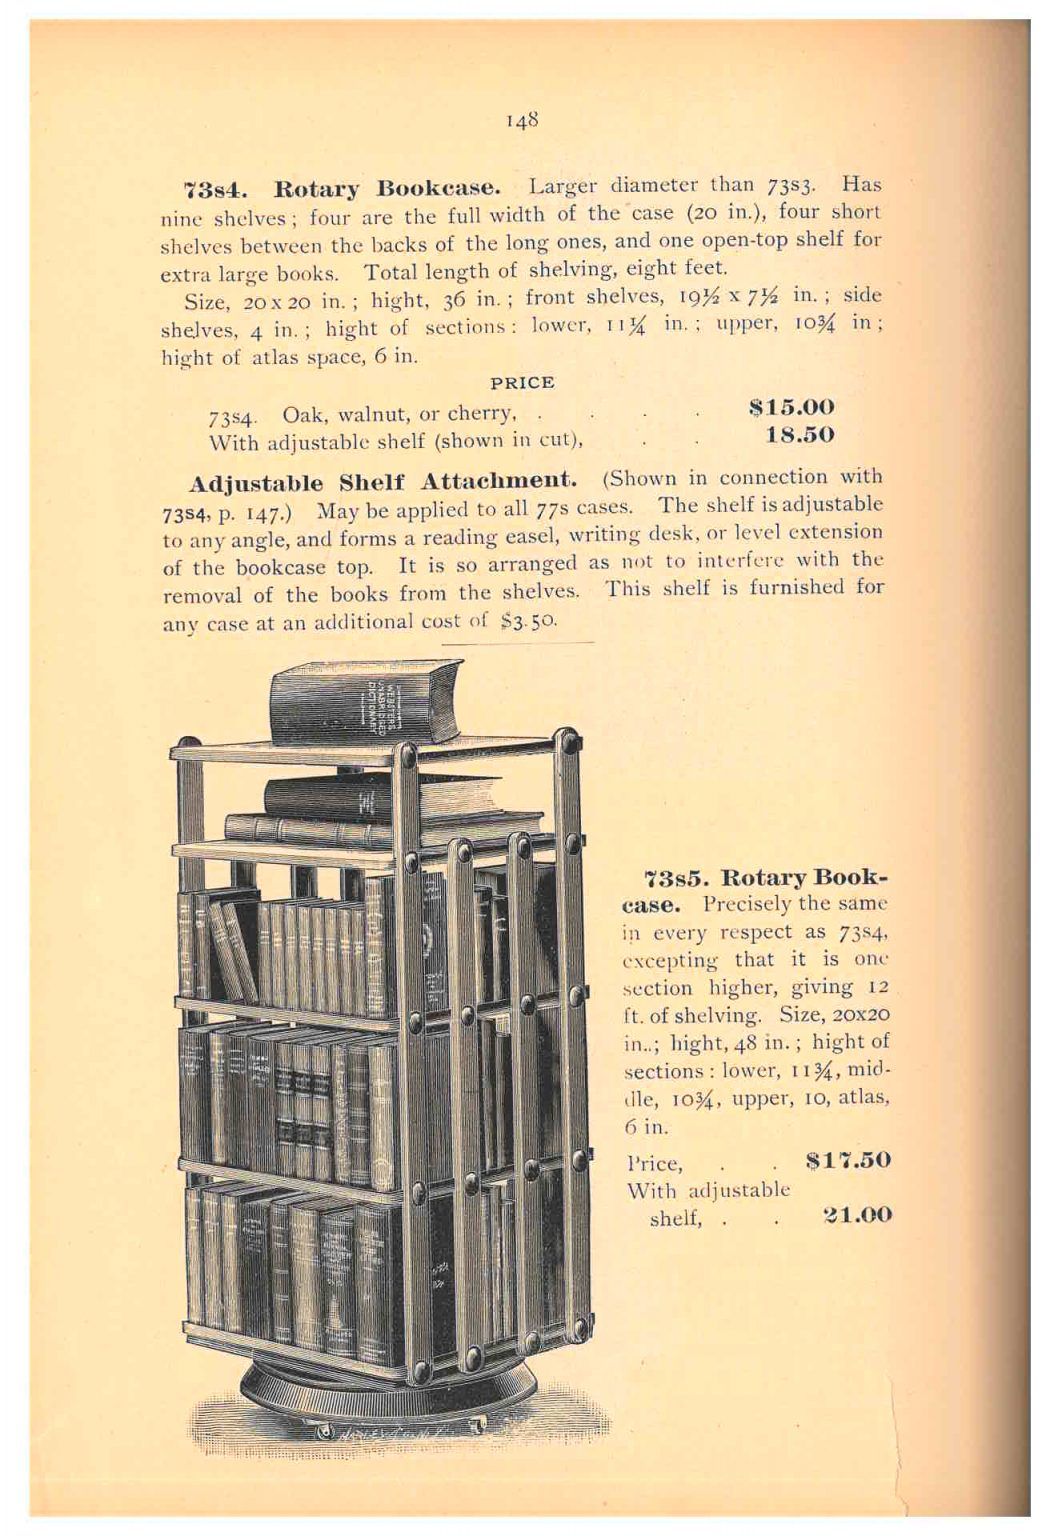 Trade catalog illustration of revolving book shelf